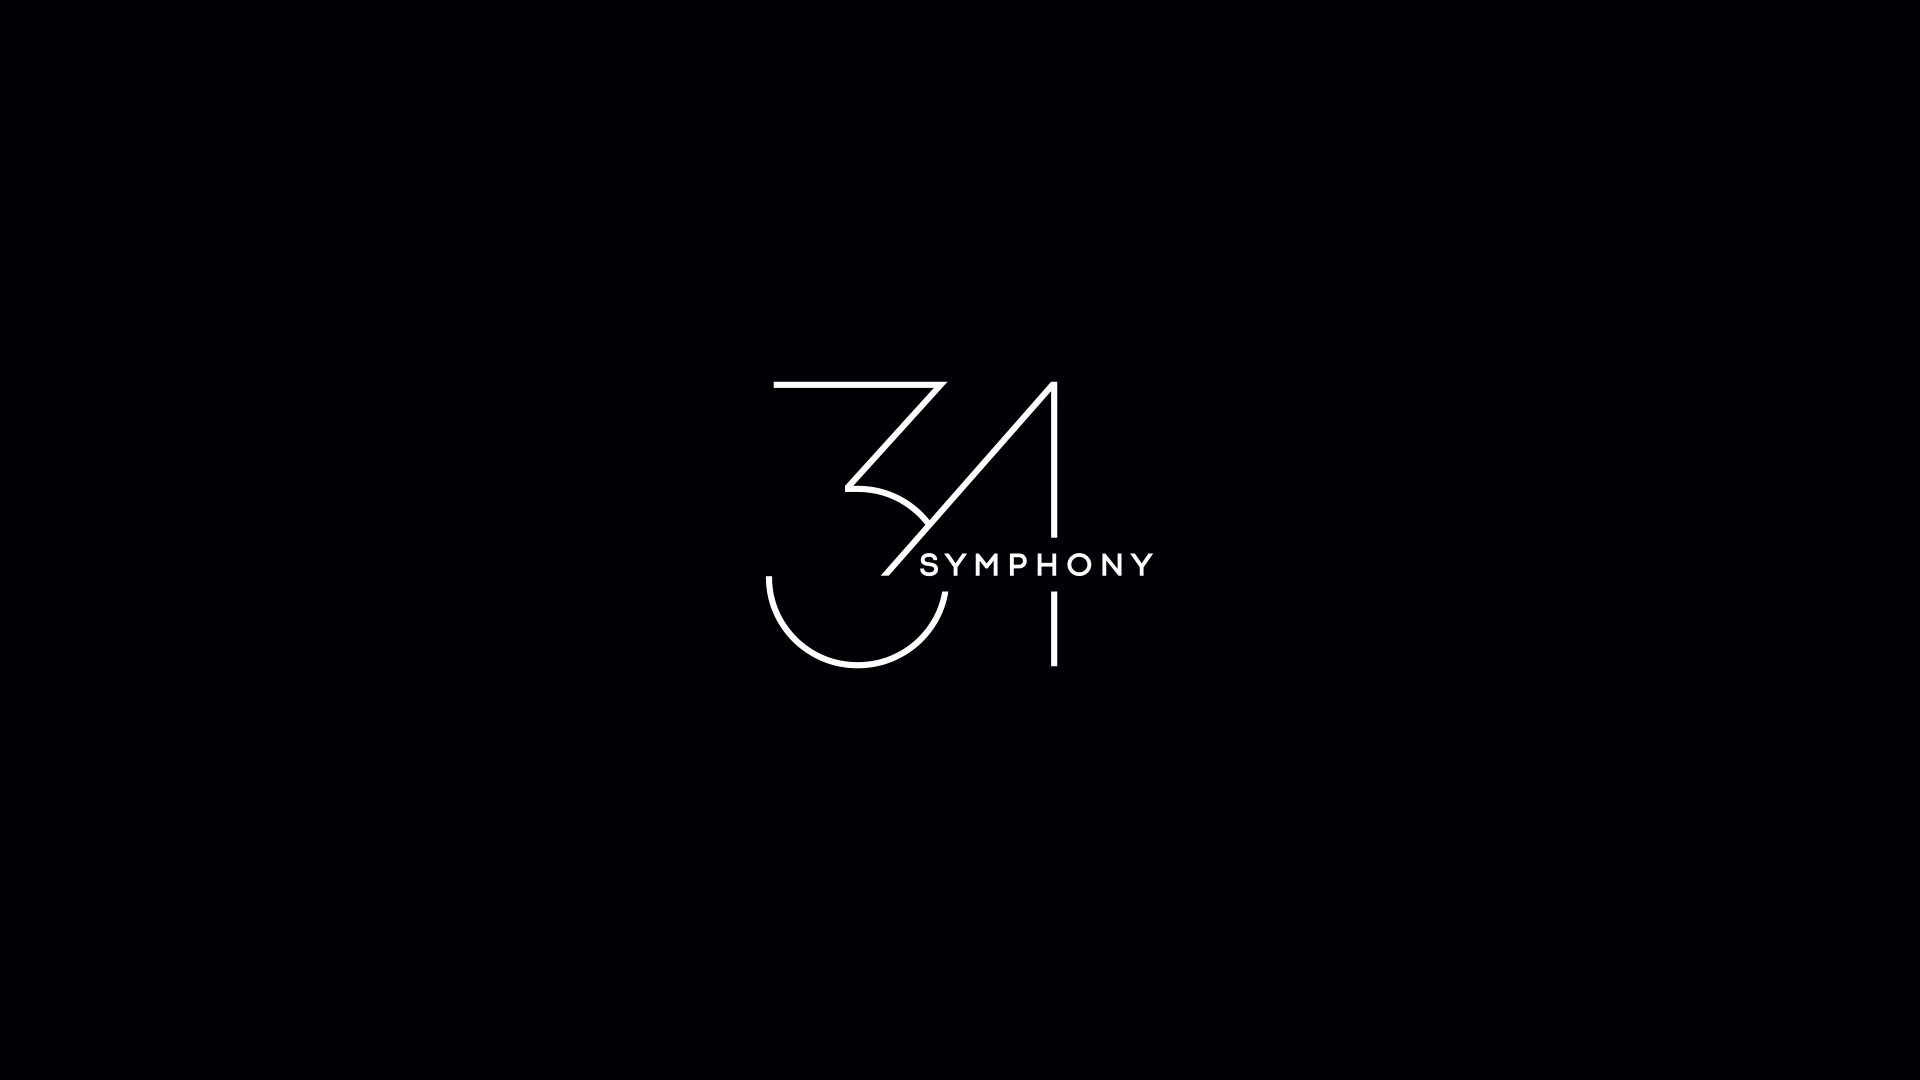 Symphony 34